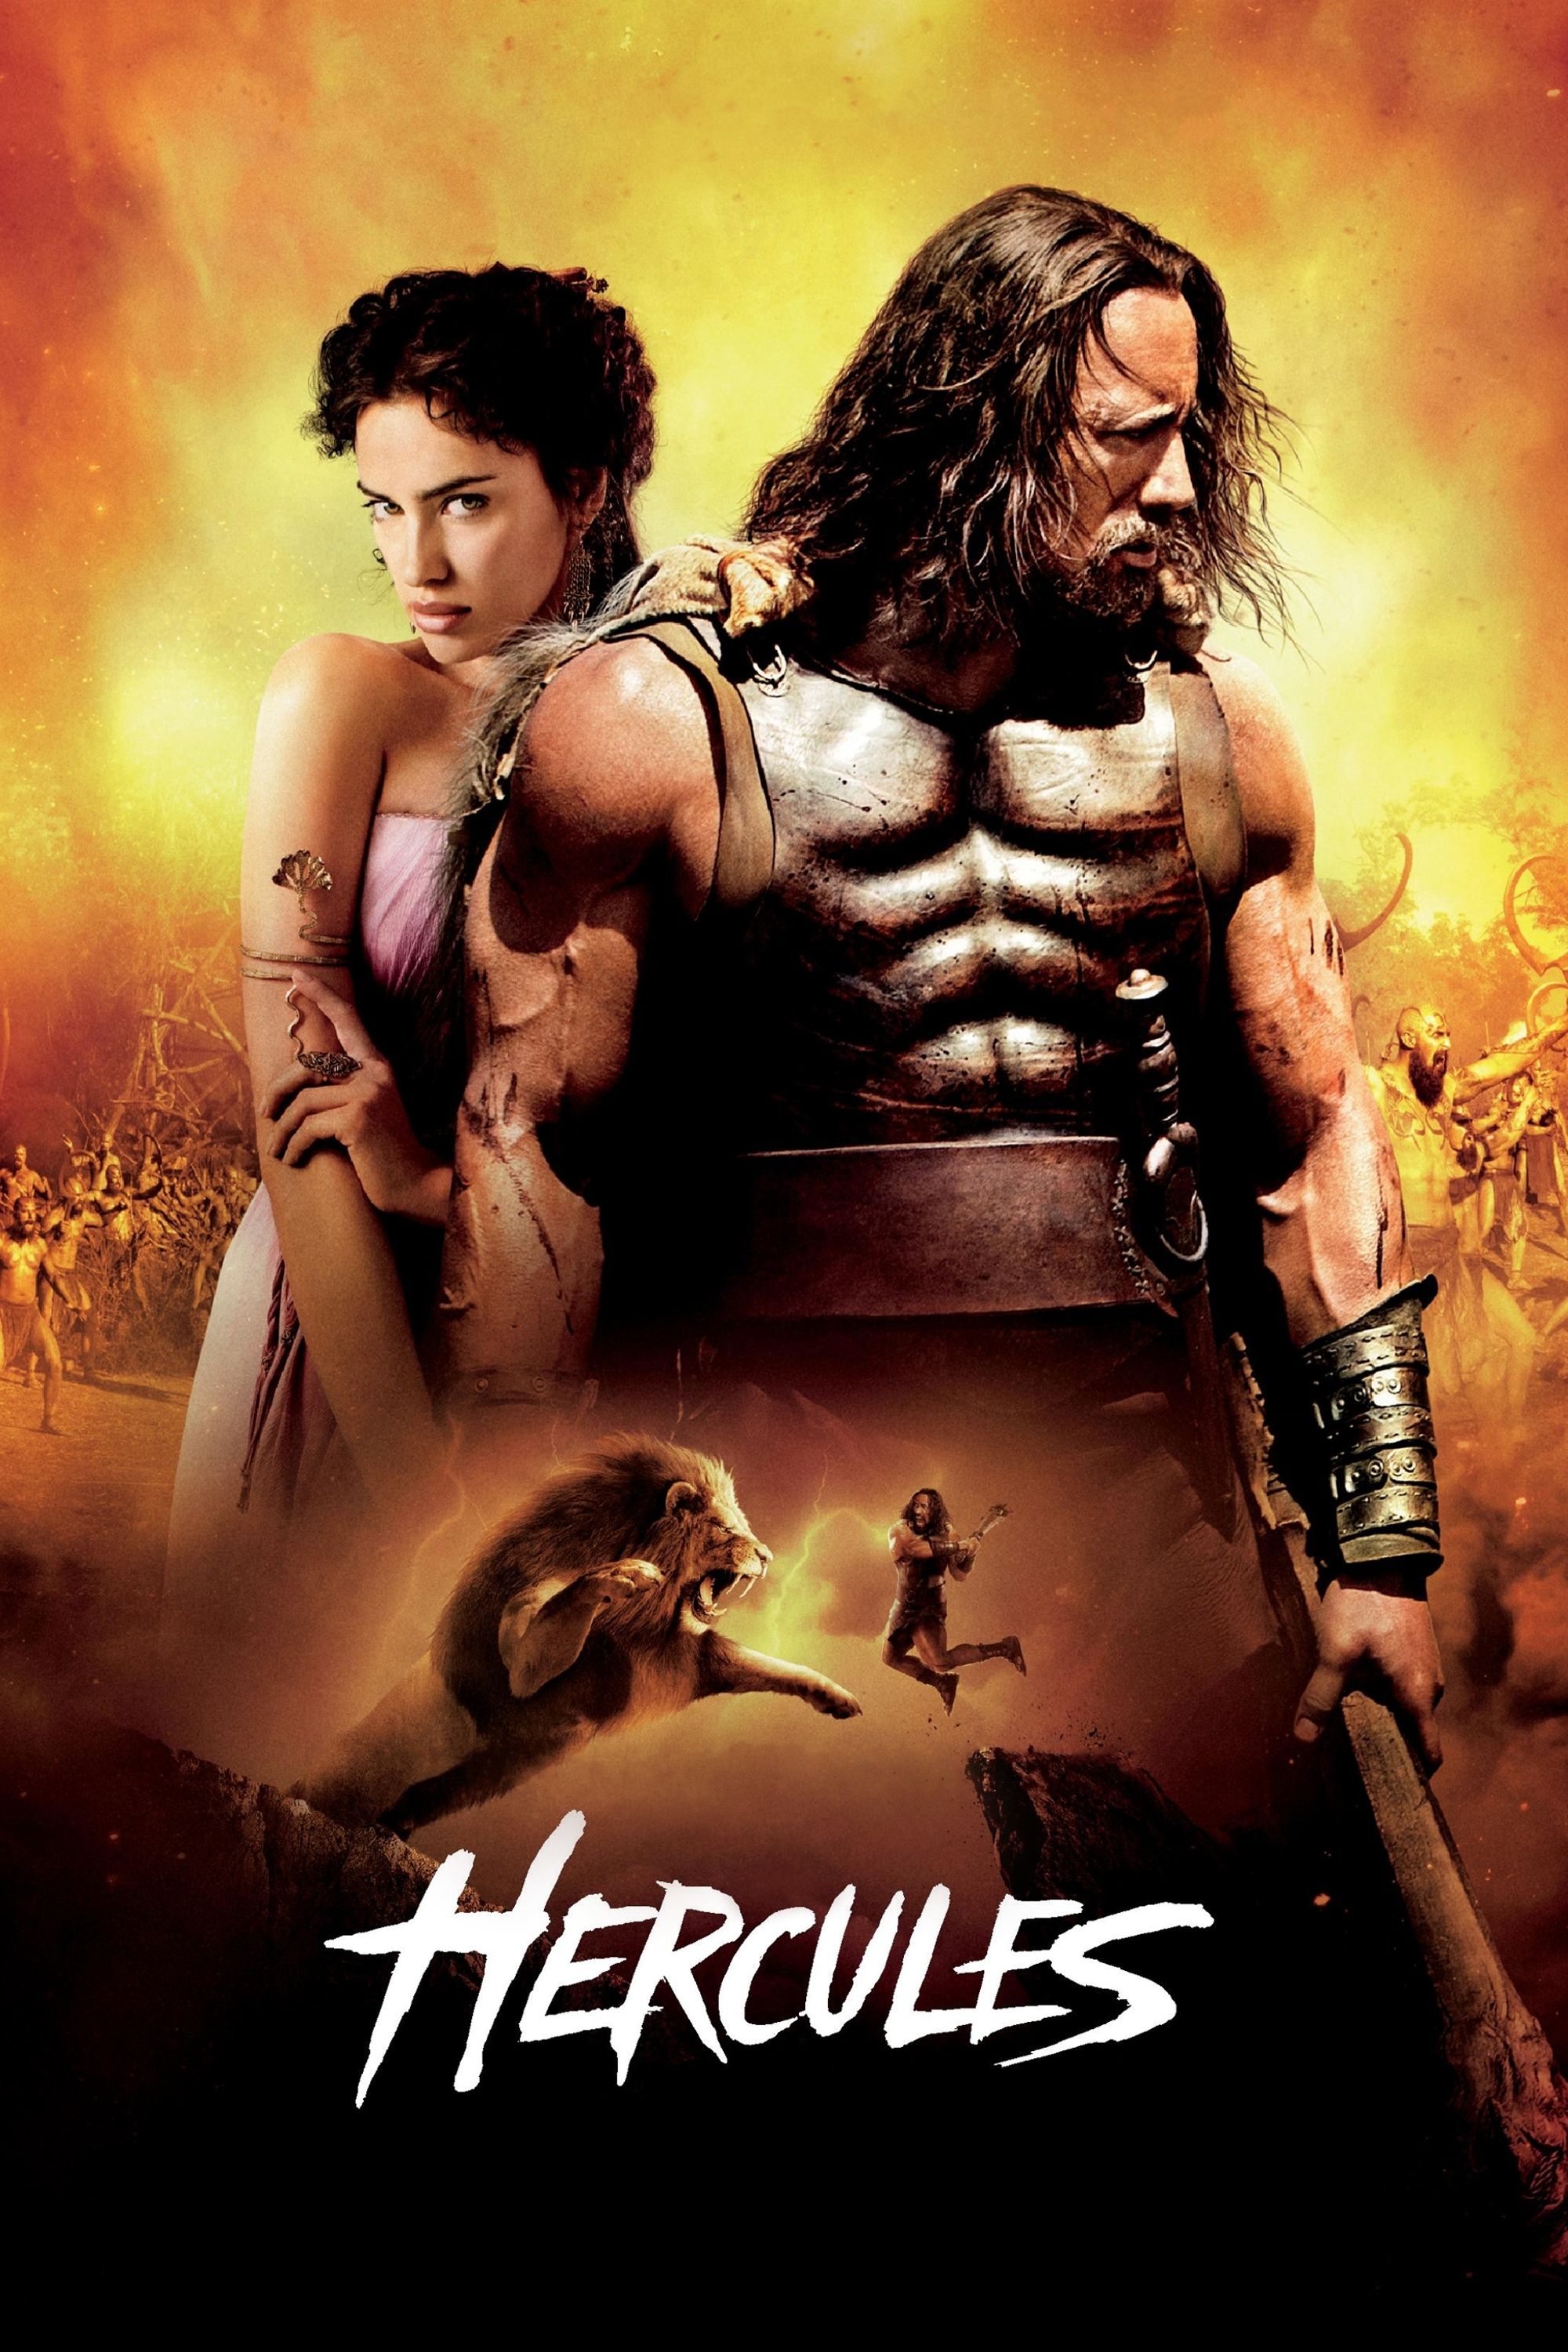 Hercules (2014) wallpaper, Movie, HQ Hercules (2014) pictureK Wallpaper 2019